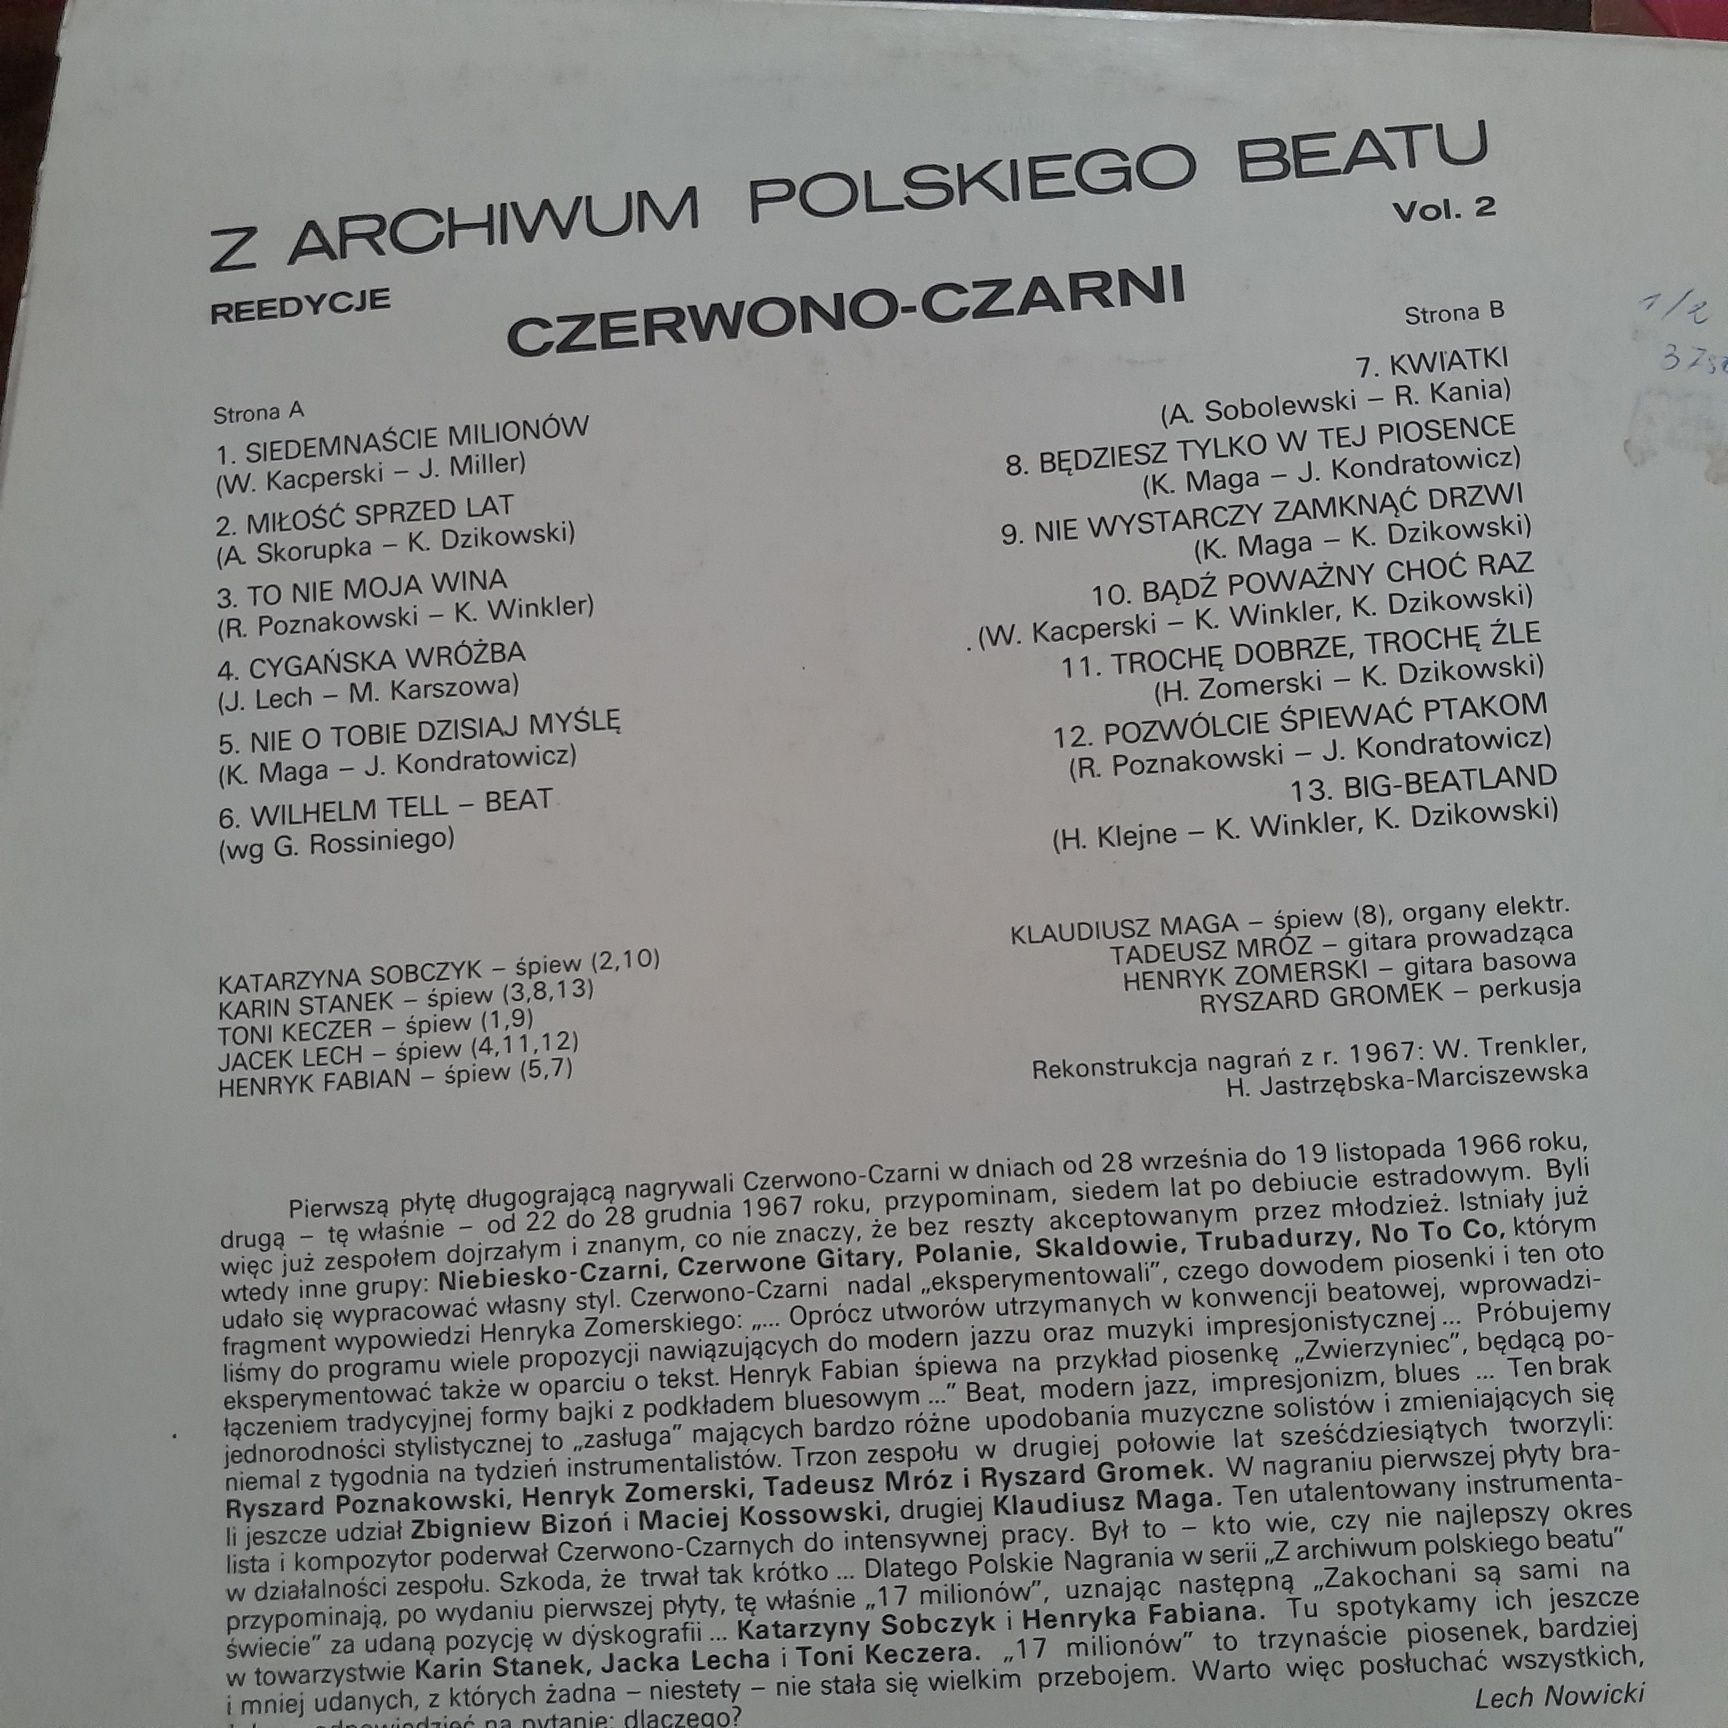 Z archiwum polskiego beatu vol 1, 2, 3, 4 Czerwono czarni Niebiesko cz